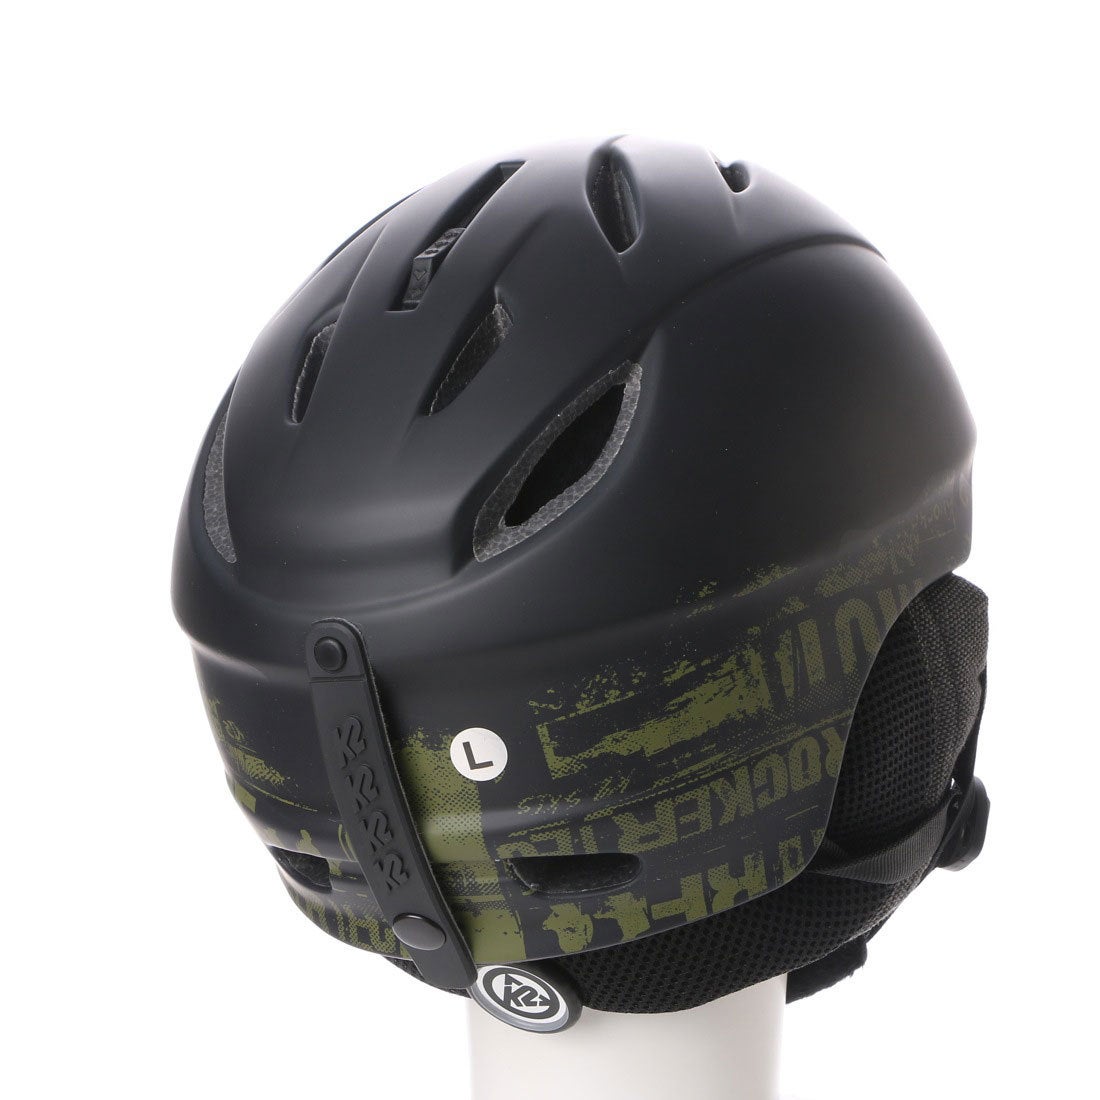 ケーツー K2 ユニセックス スキー/スノーボード ヘルメット フォトマジック S150801701 99